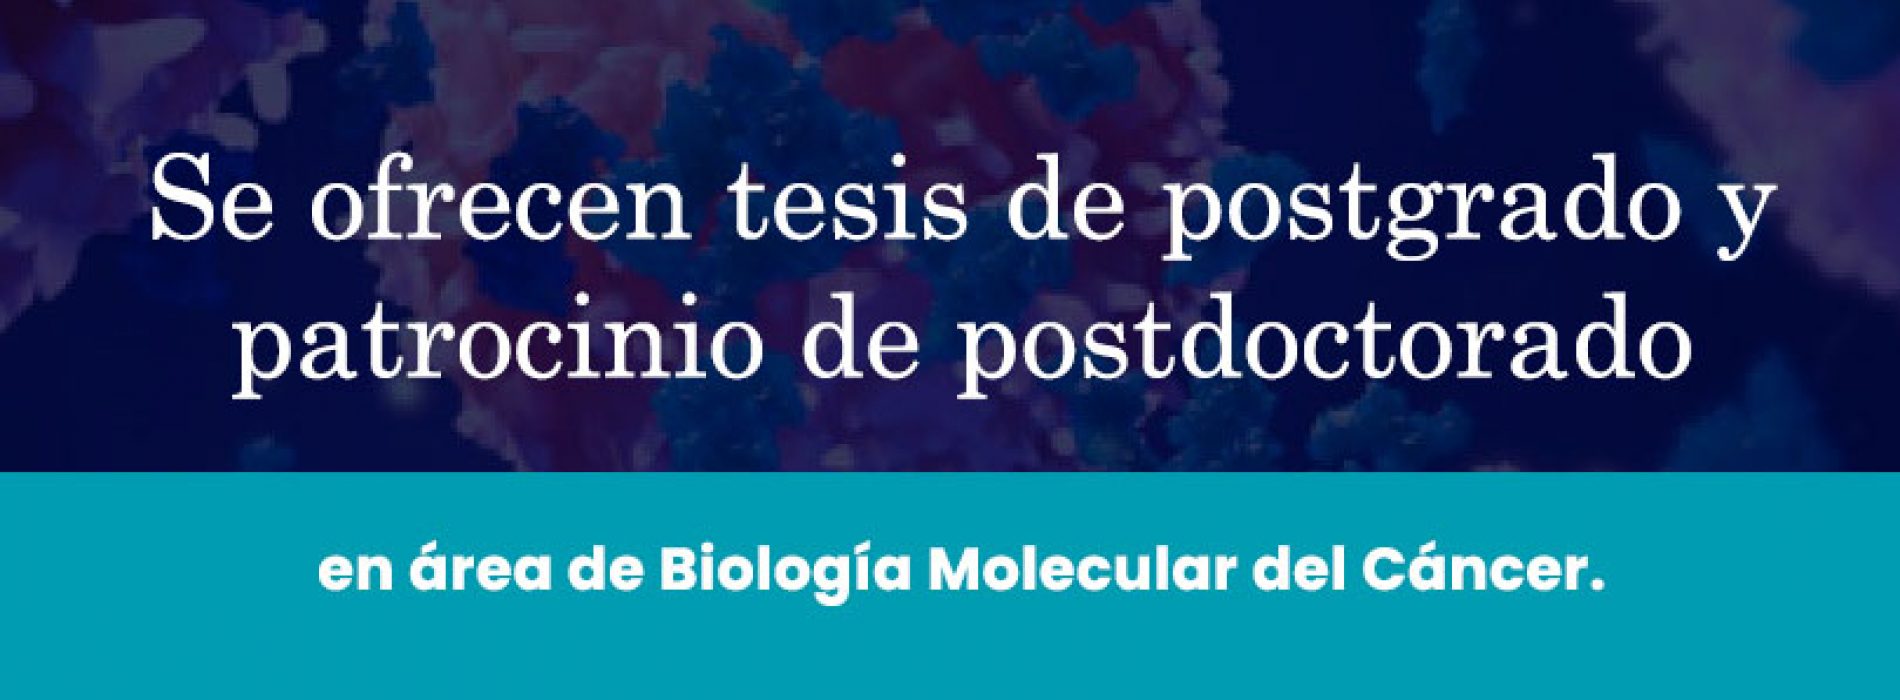 Se ofrecen tesis de postgrado y patrocinio de postdoctorado en área de Biología Molecular del Cáncer.